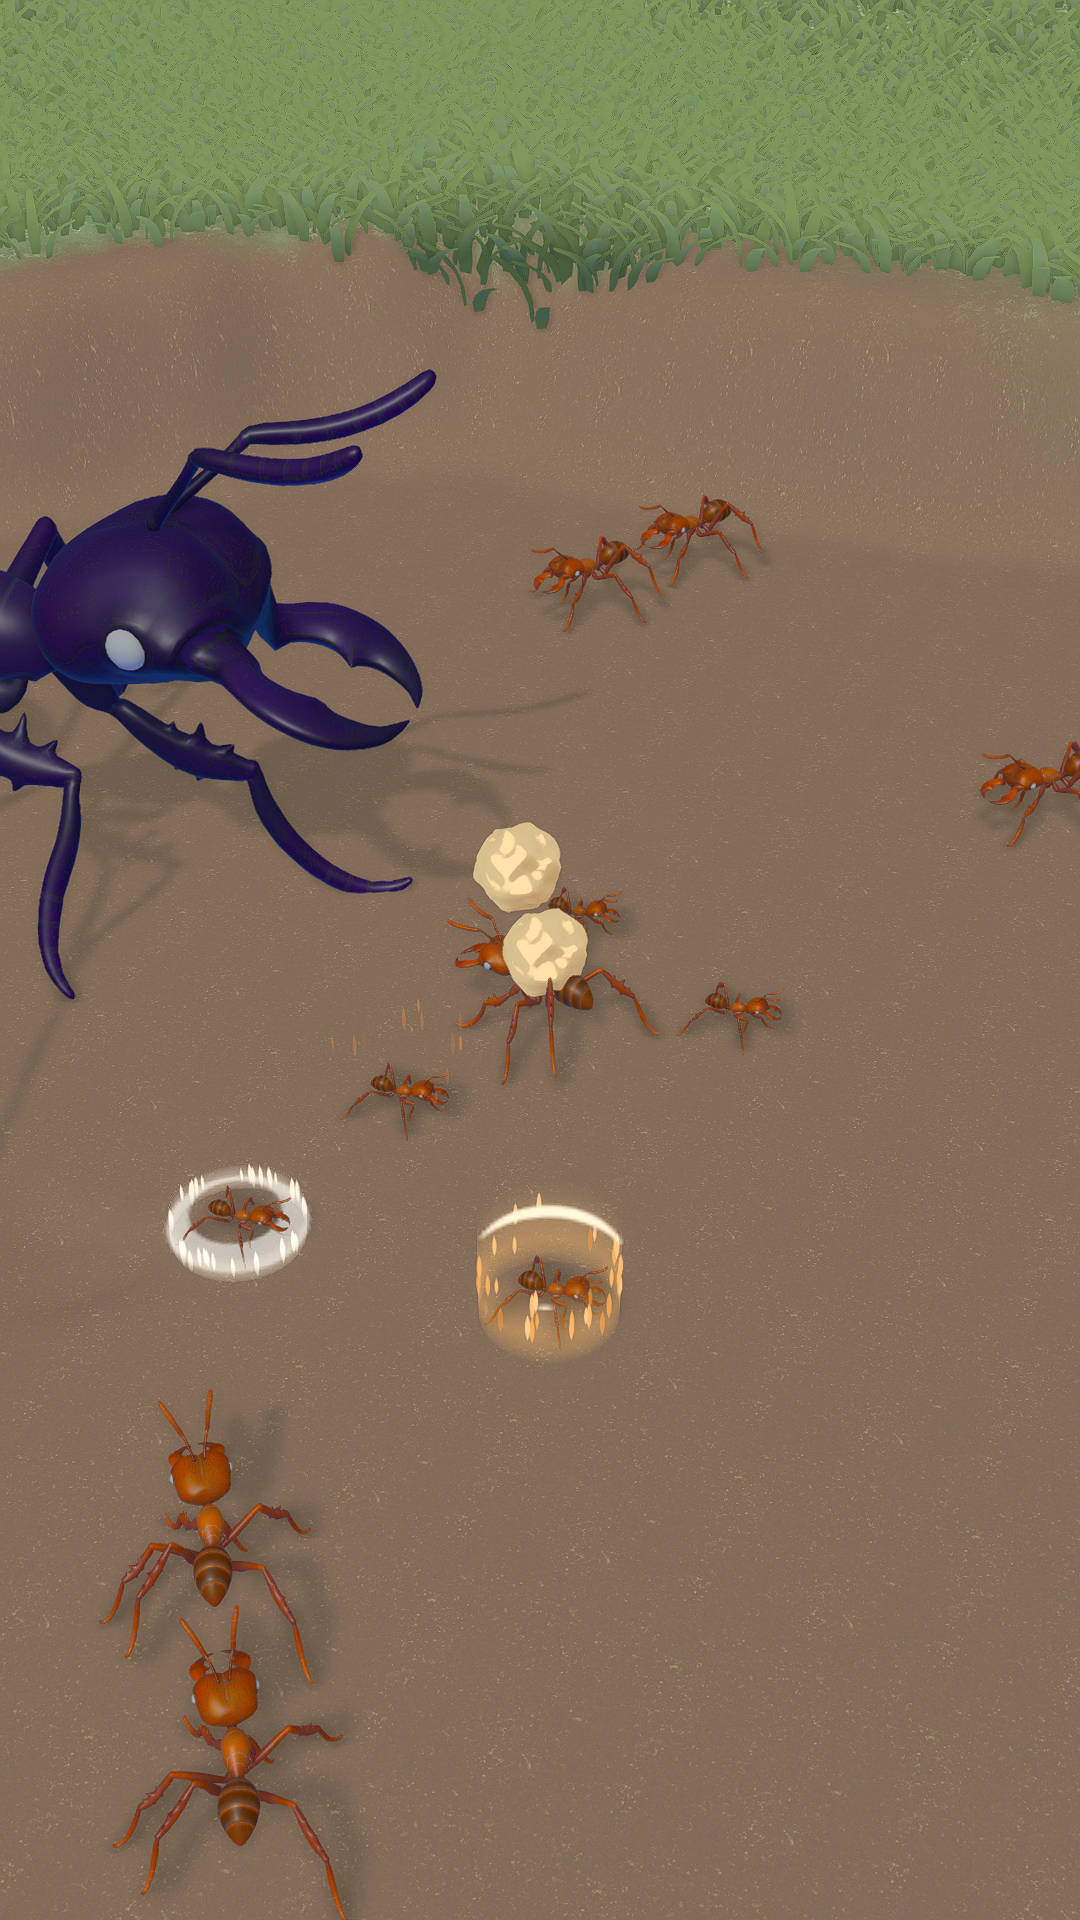 Ant Colony Adventure遊戲截圖